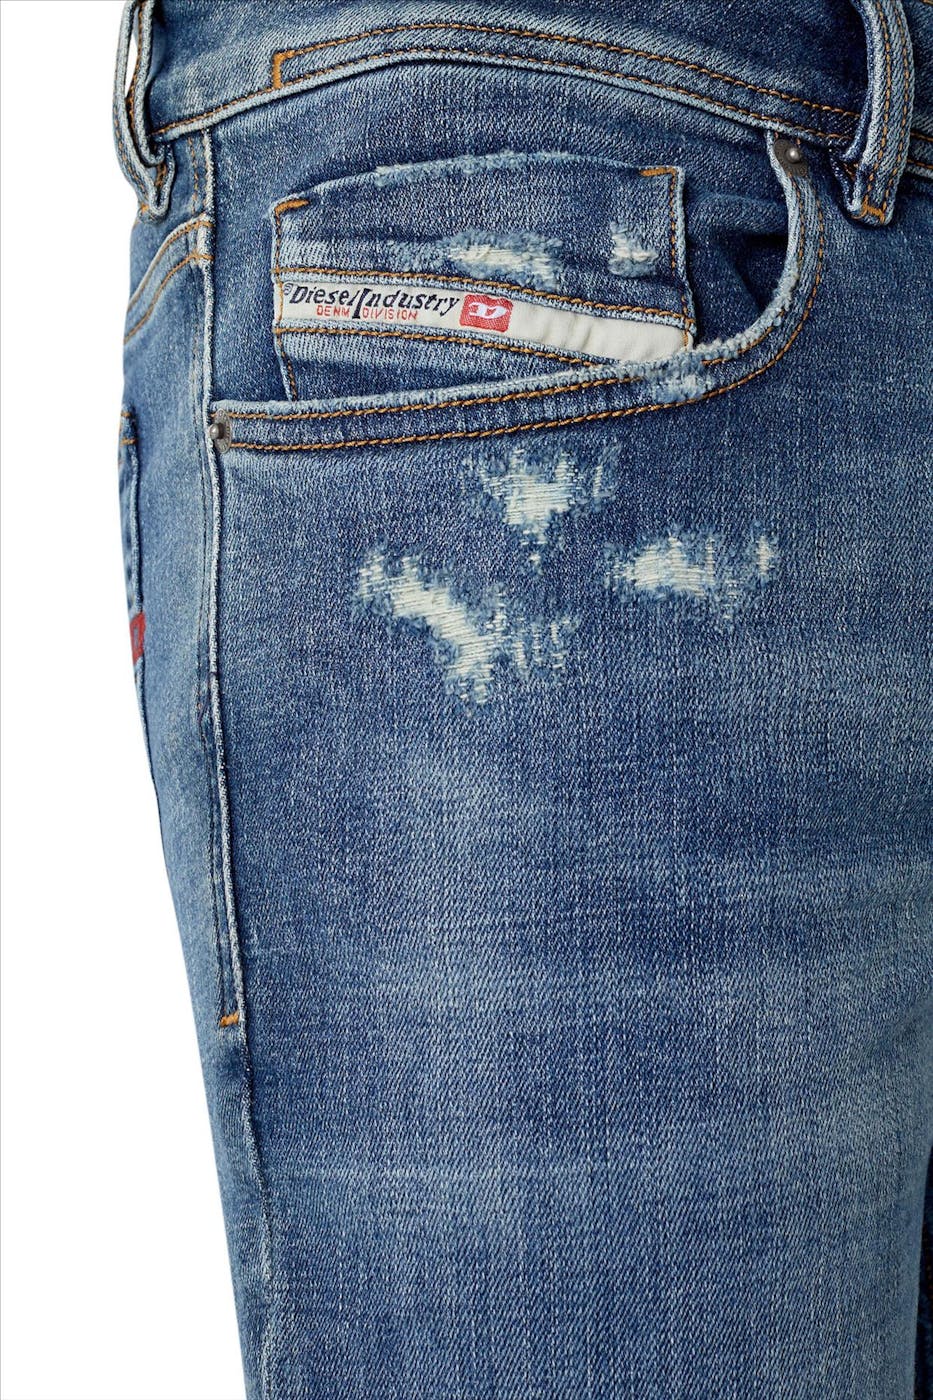 Diesel - Blauwe 1979 Sleenker Skinny jeans